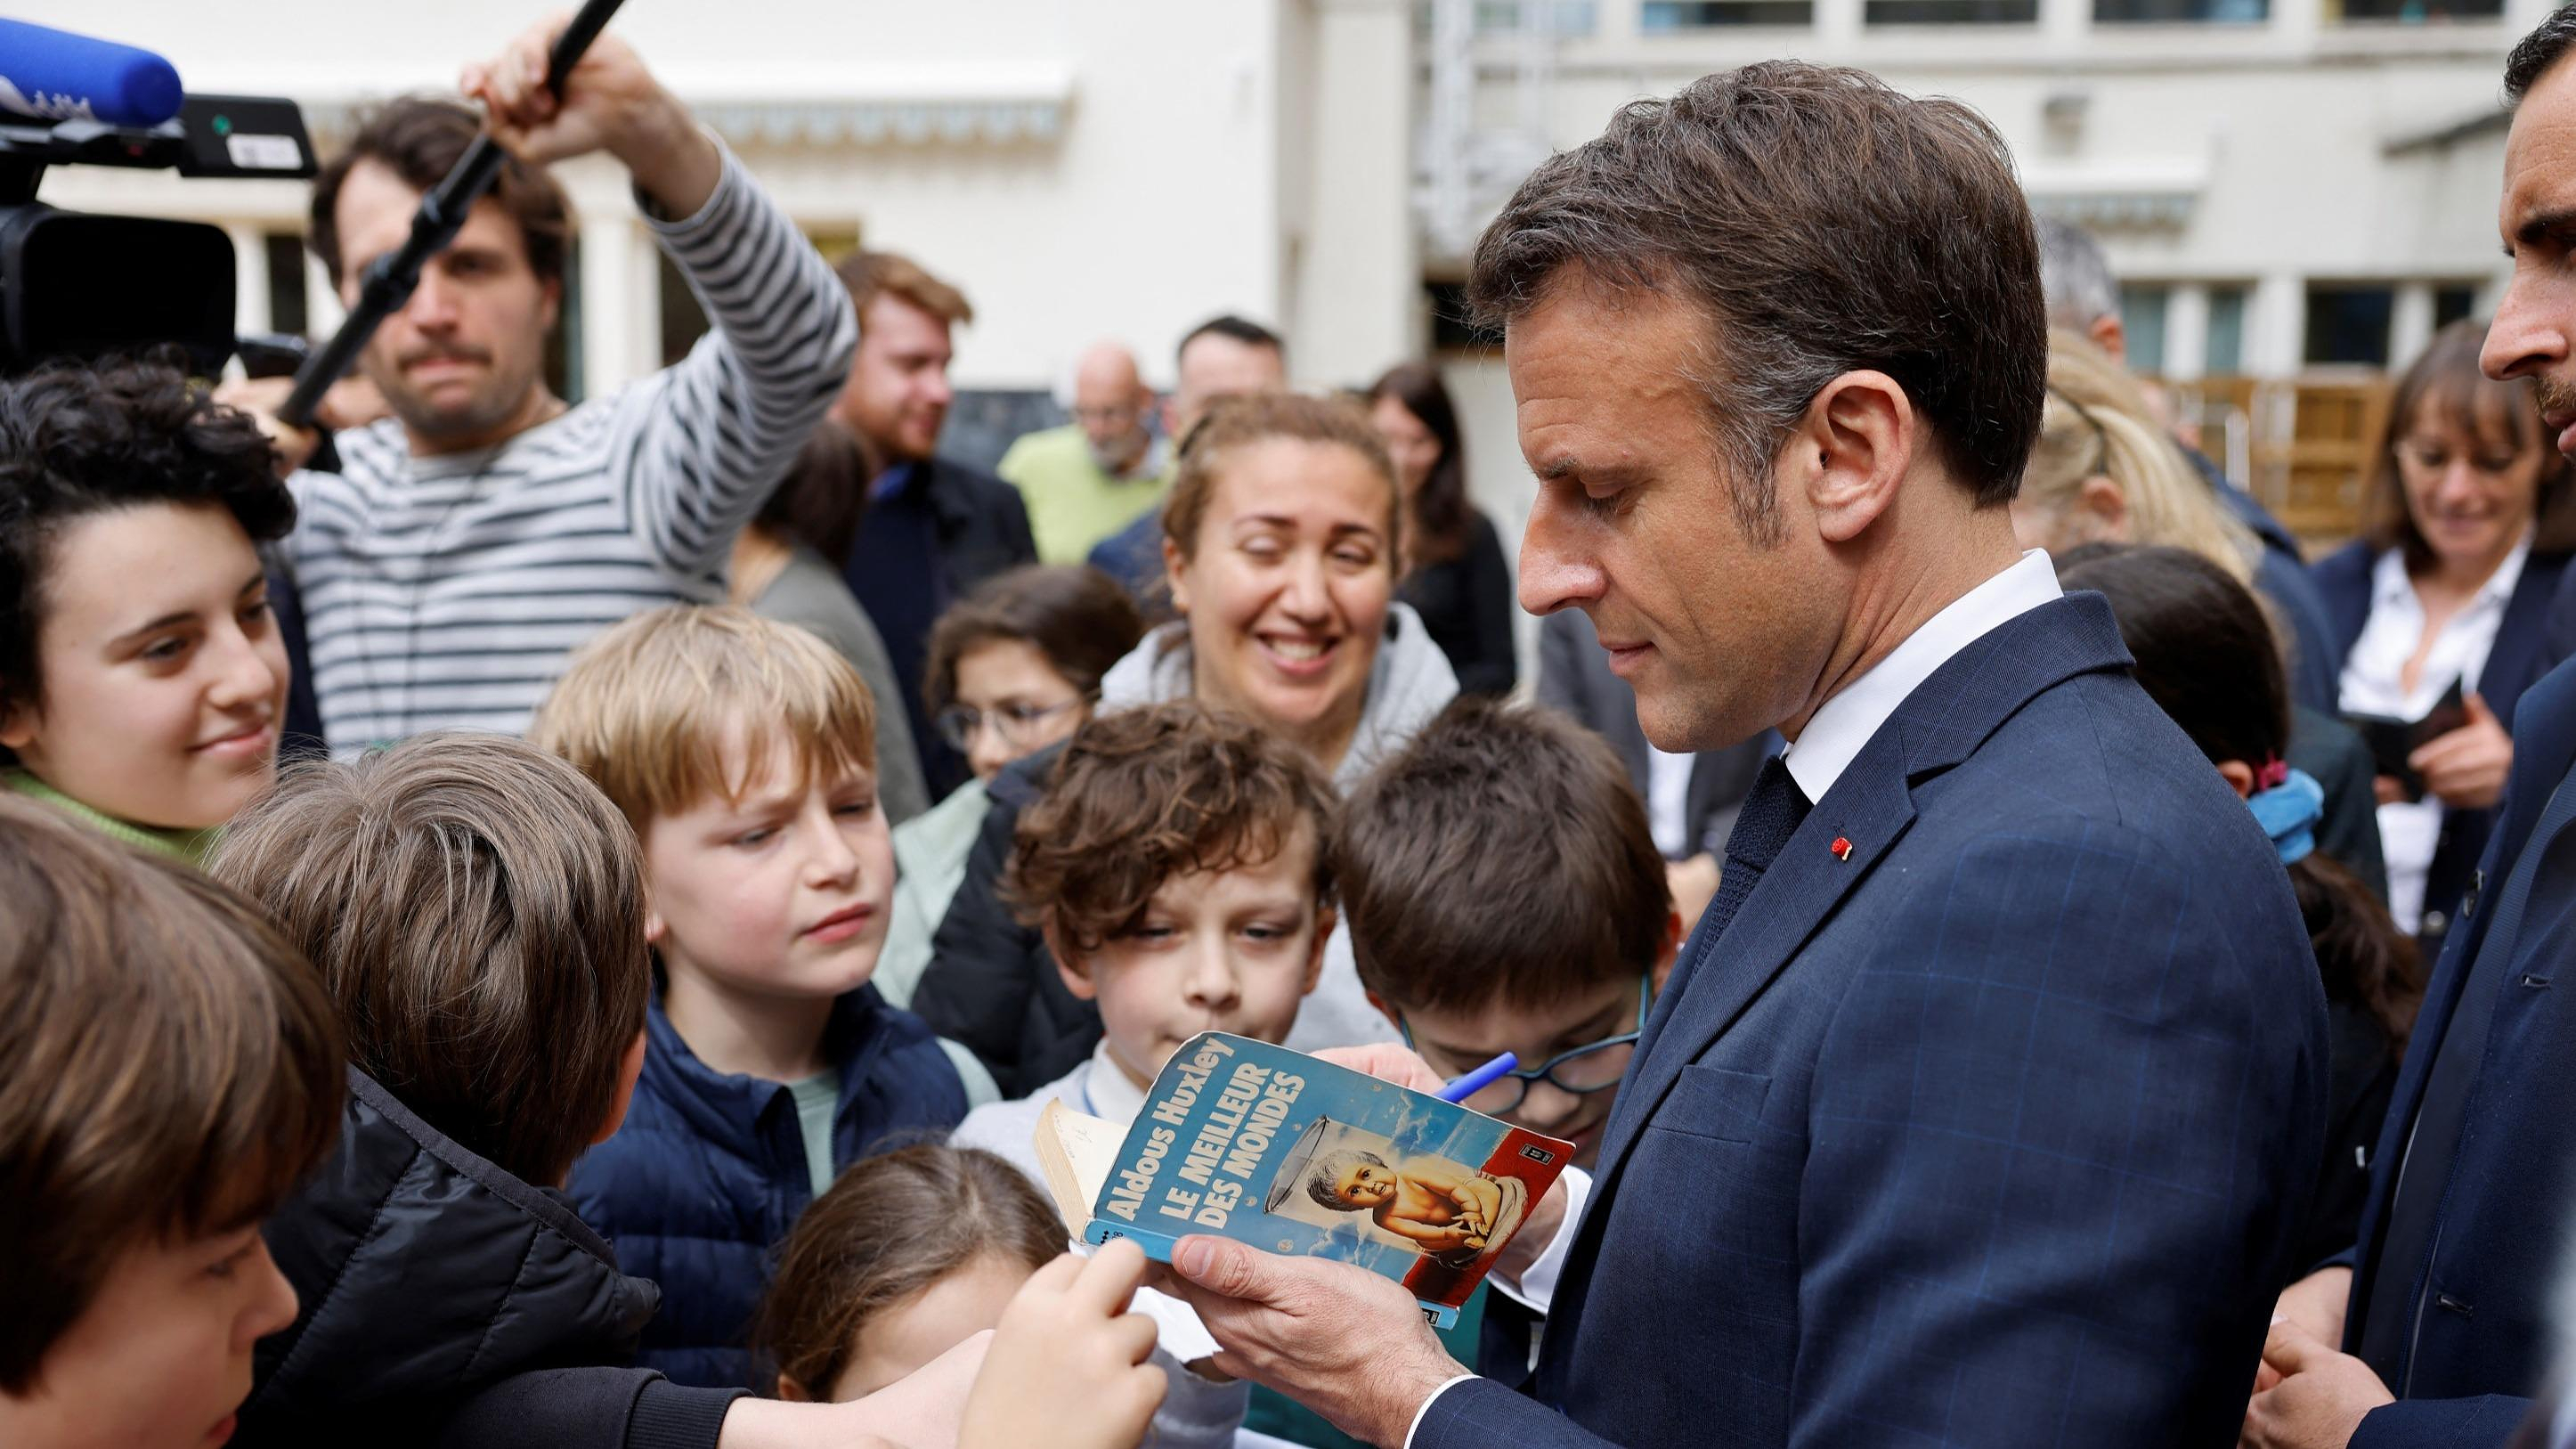 Emmanuel Macron visits the Paris Book Festival